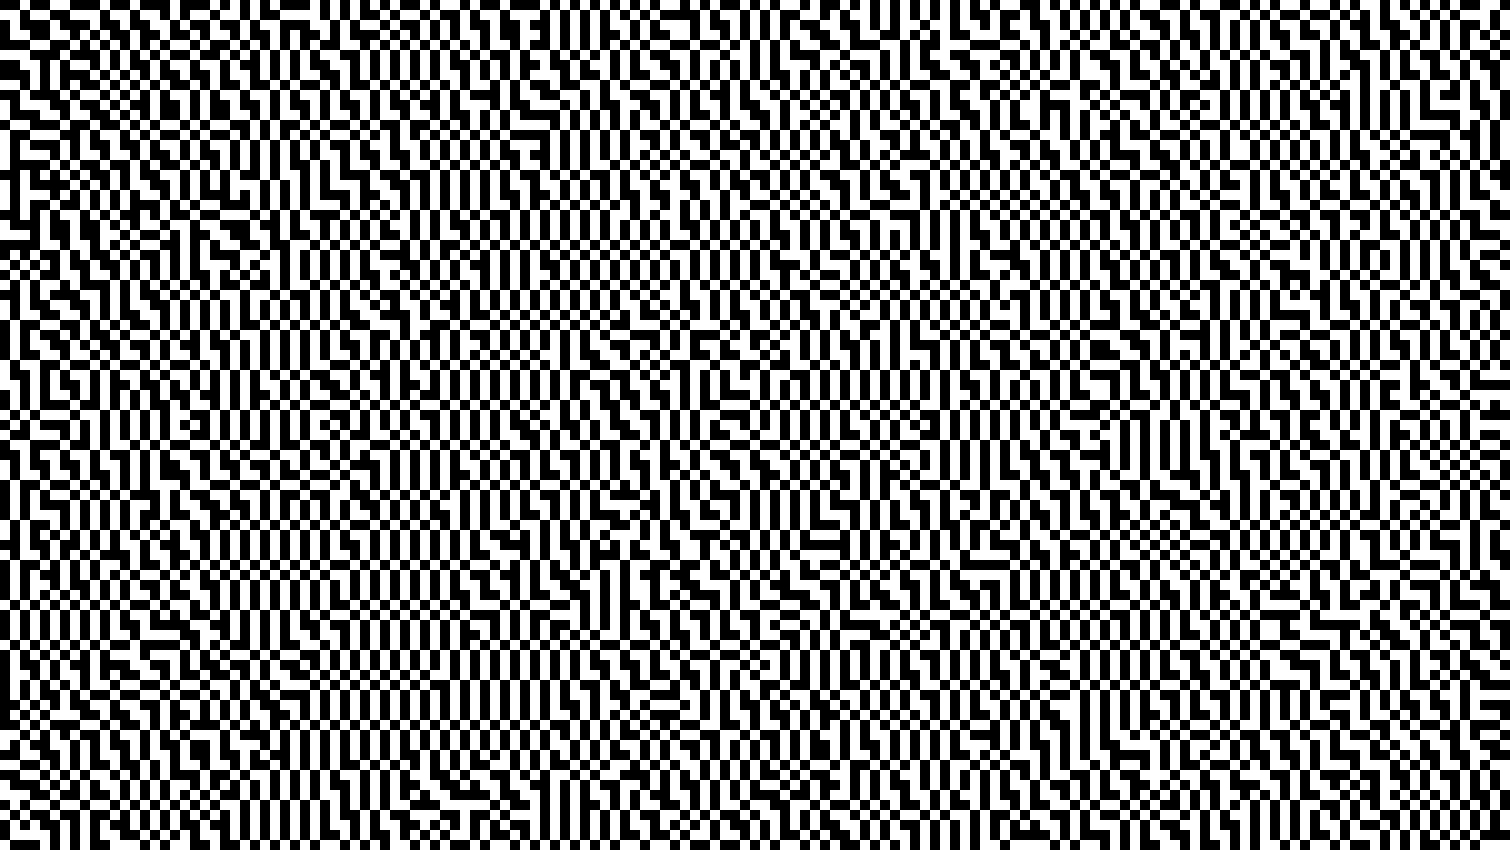 Pixelkomposition PC093503 (Pixelkomposition) 